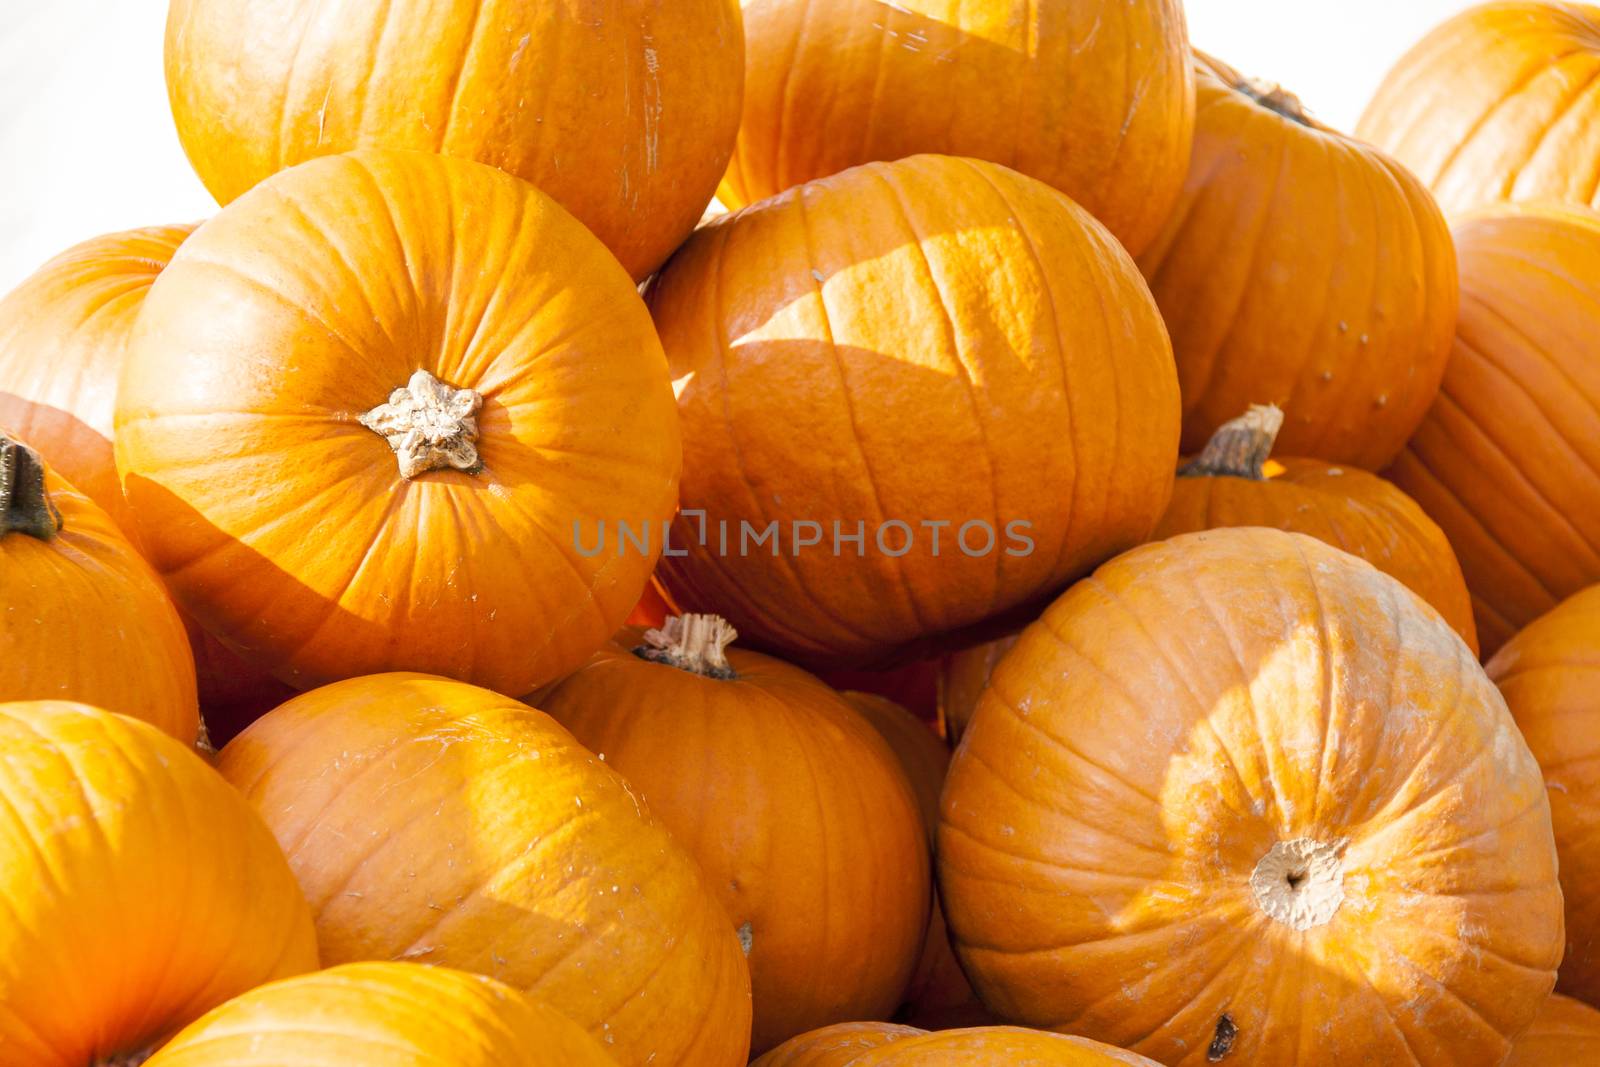 Halloween big Halloween cucurbita pumpkin pumpkins from autumn harvest on a market